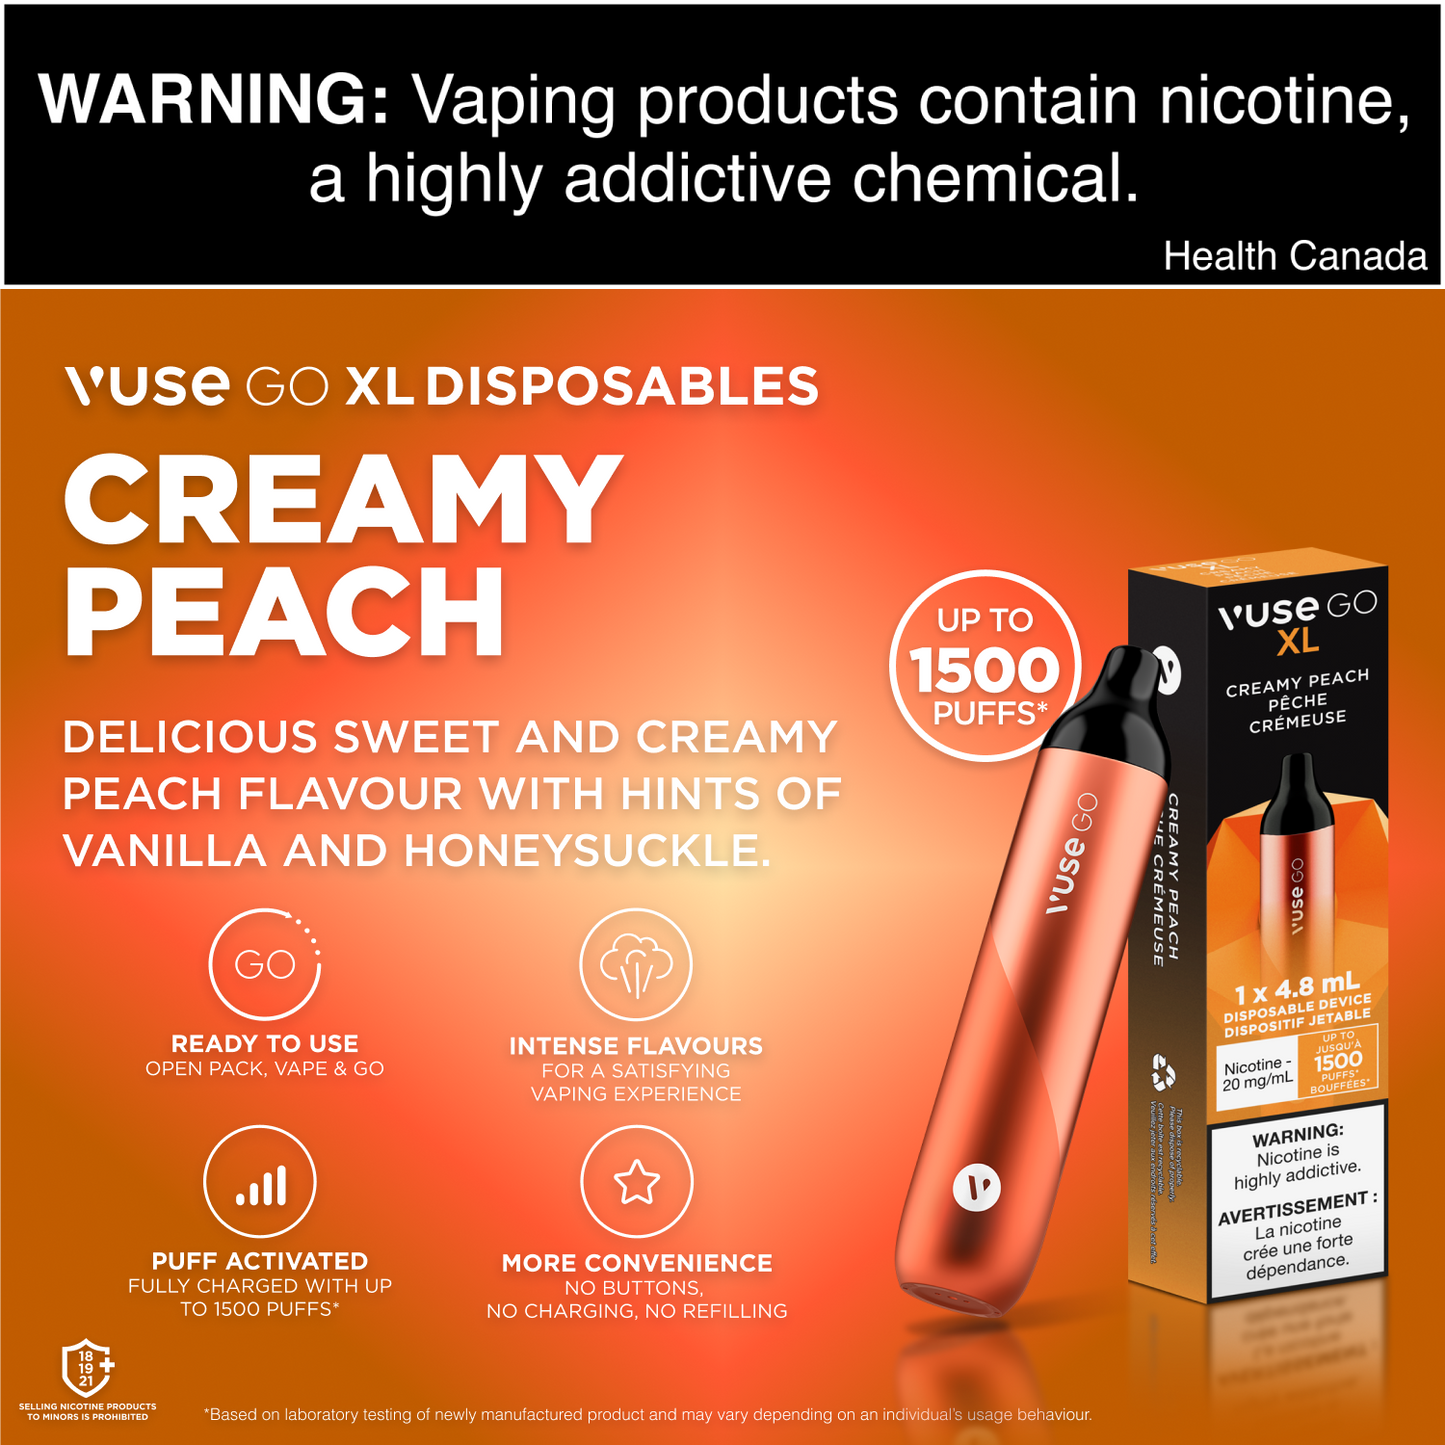 Vuse Go XL Creamy Peach Disposable Vape